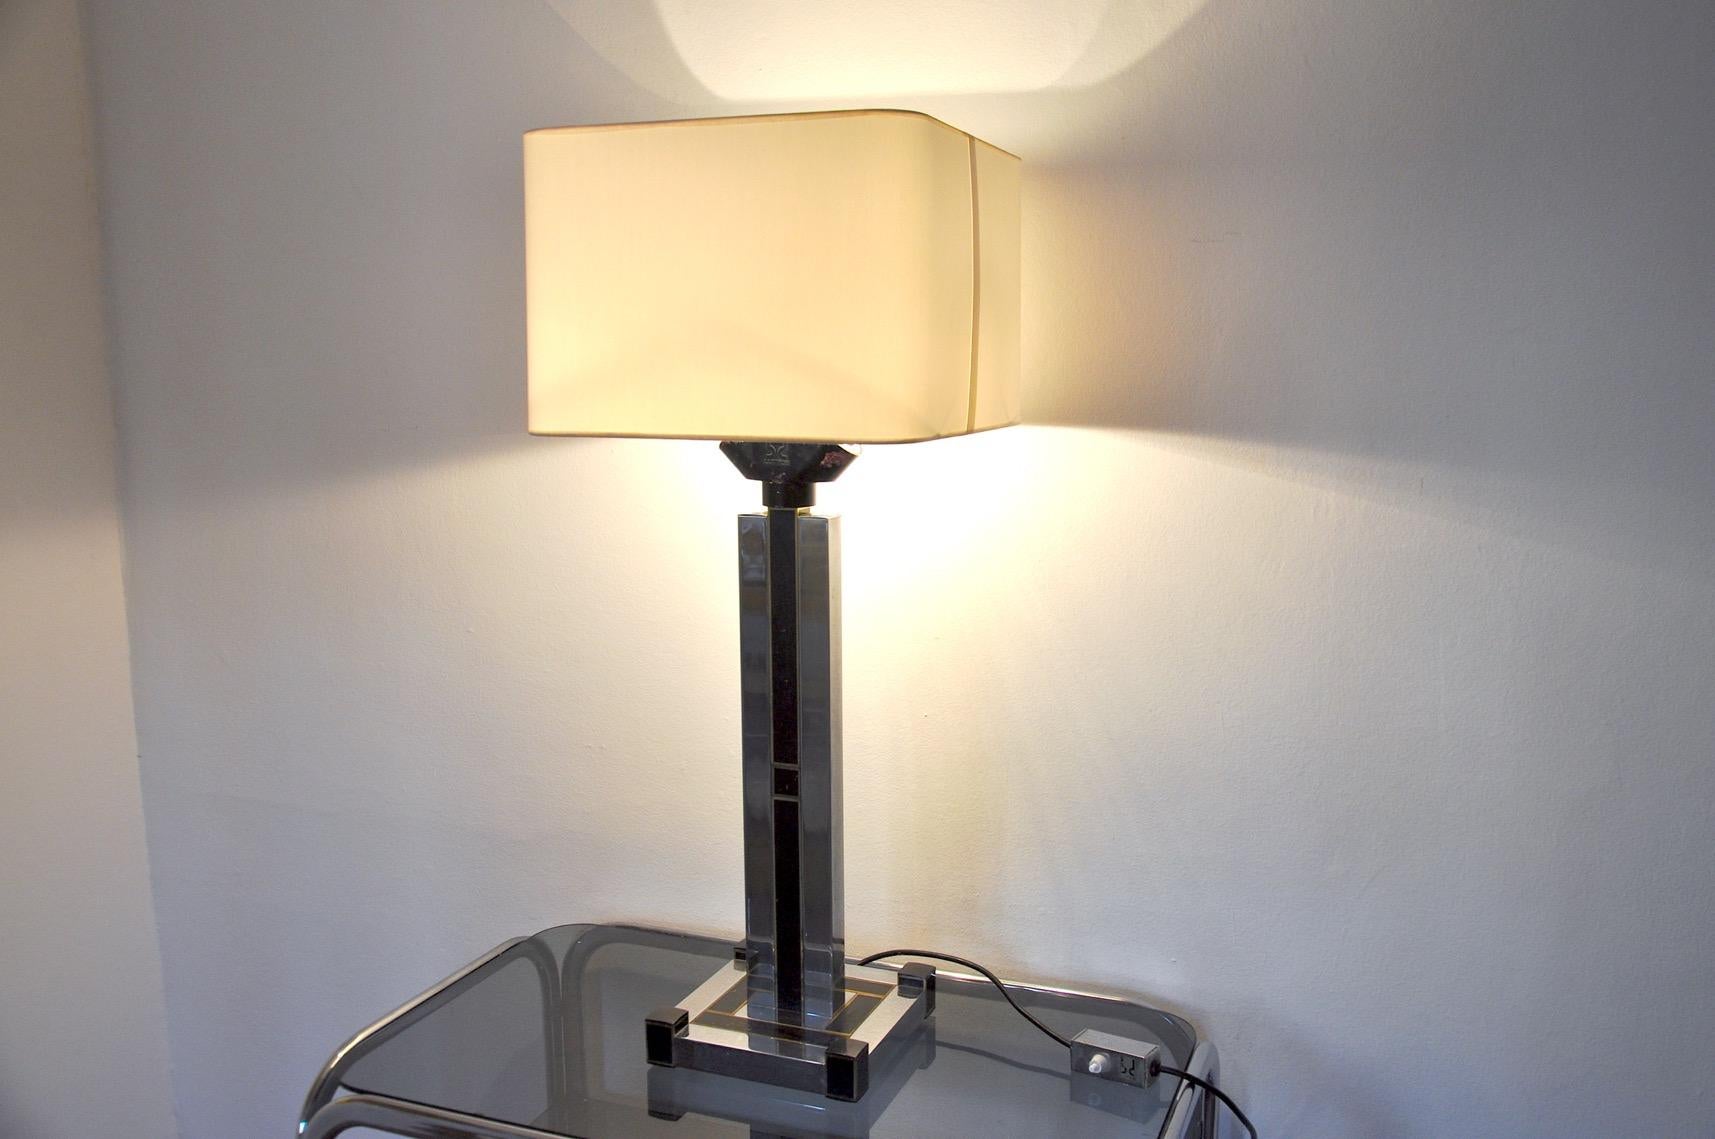 Très belle et haute lampe cubique de bd lumica dont le design est attribué à willy rizzo, produite en espagne dans les années 1980. Lampe unique par sa structure, comparable à une œuvre d'art. L'abat-jour a été réalisé sur mesure avec une toile